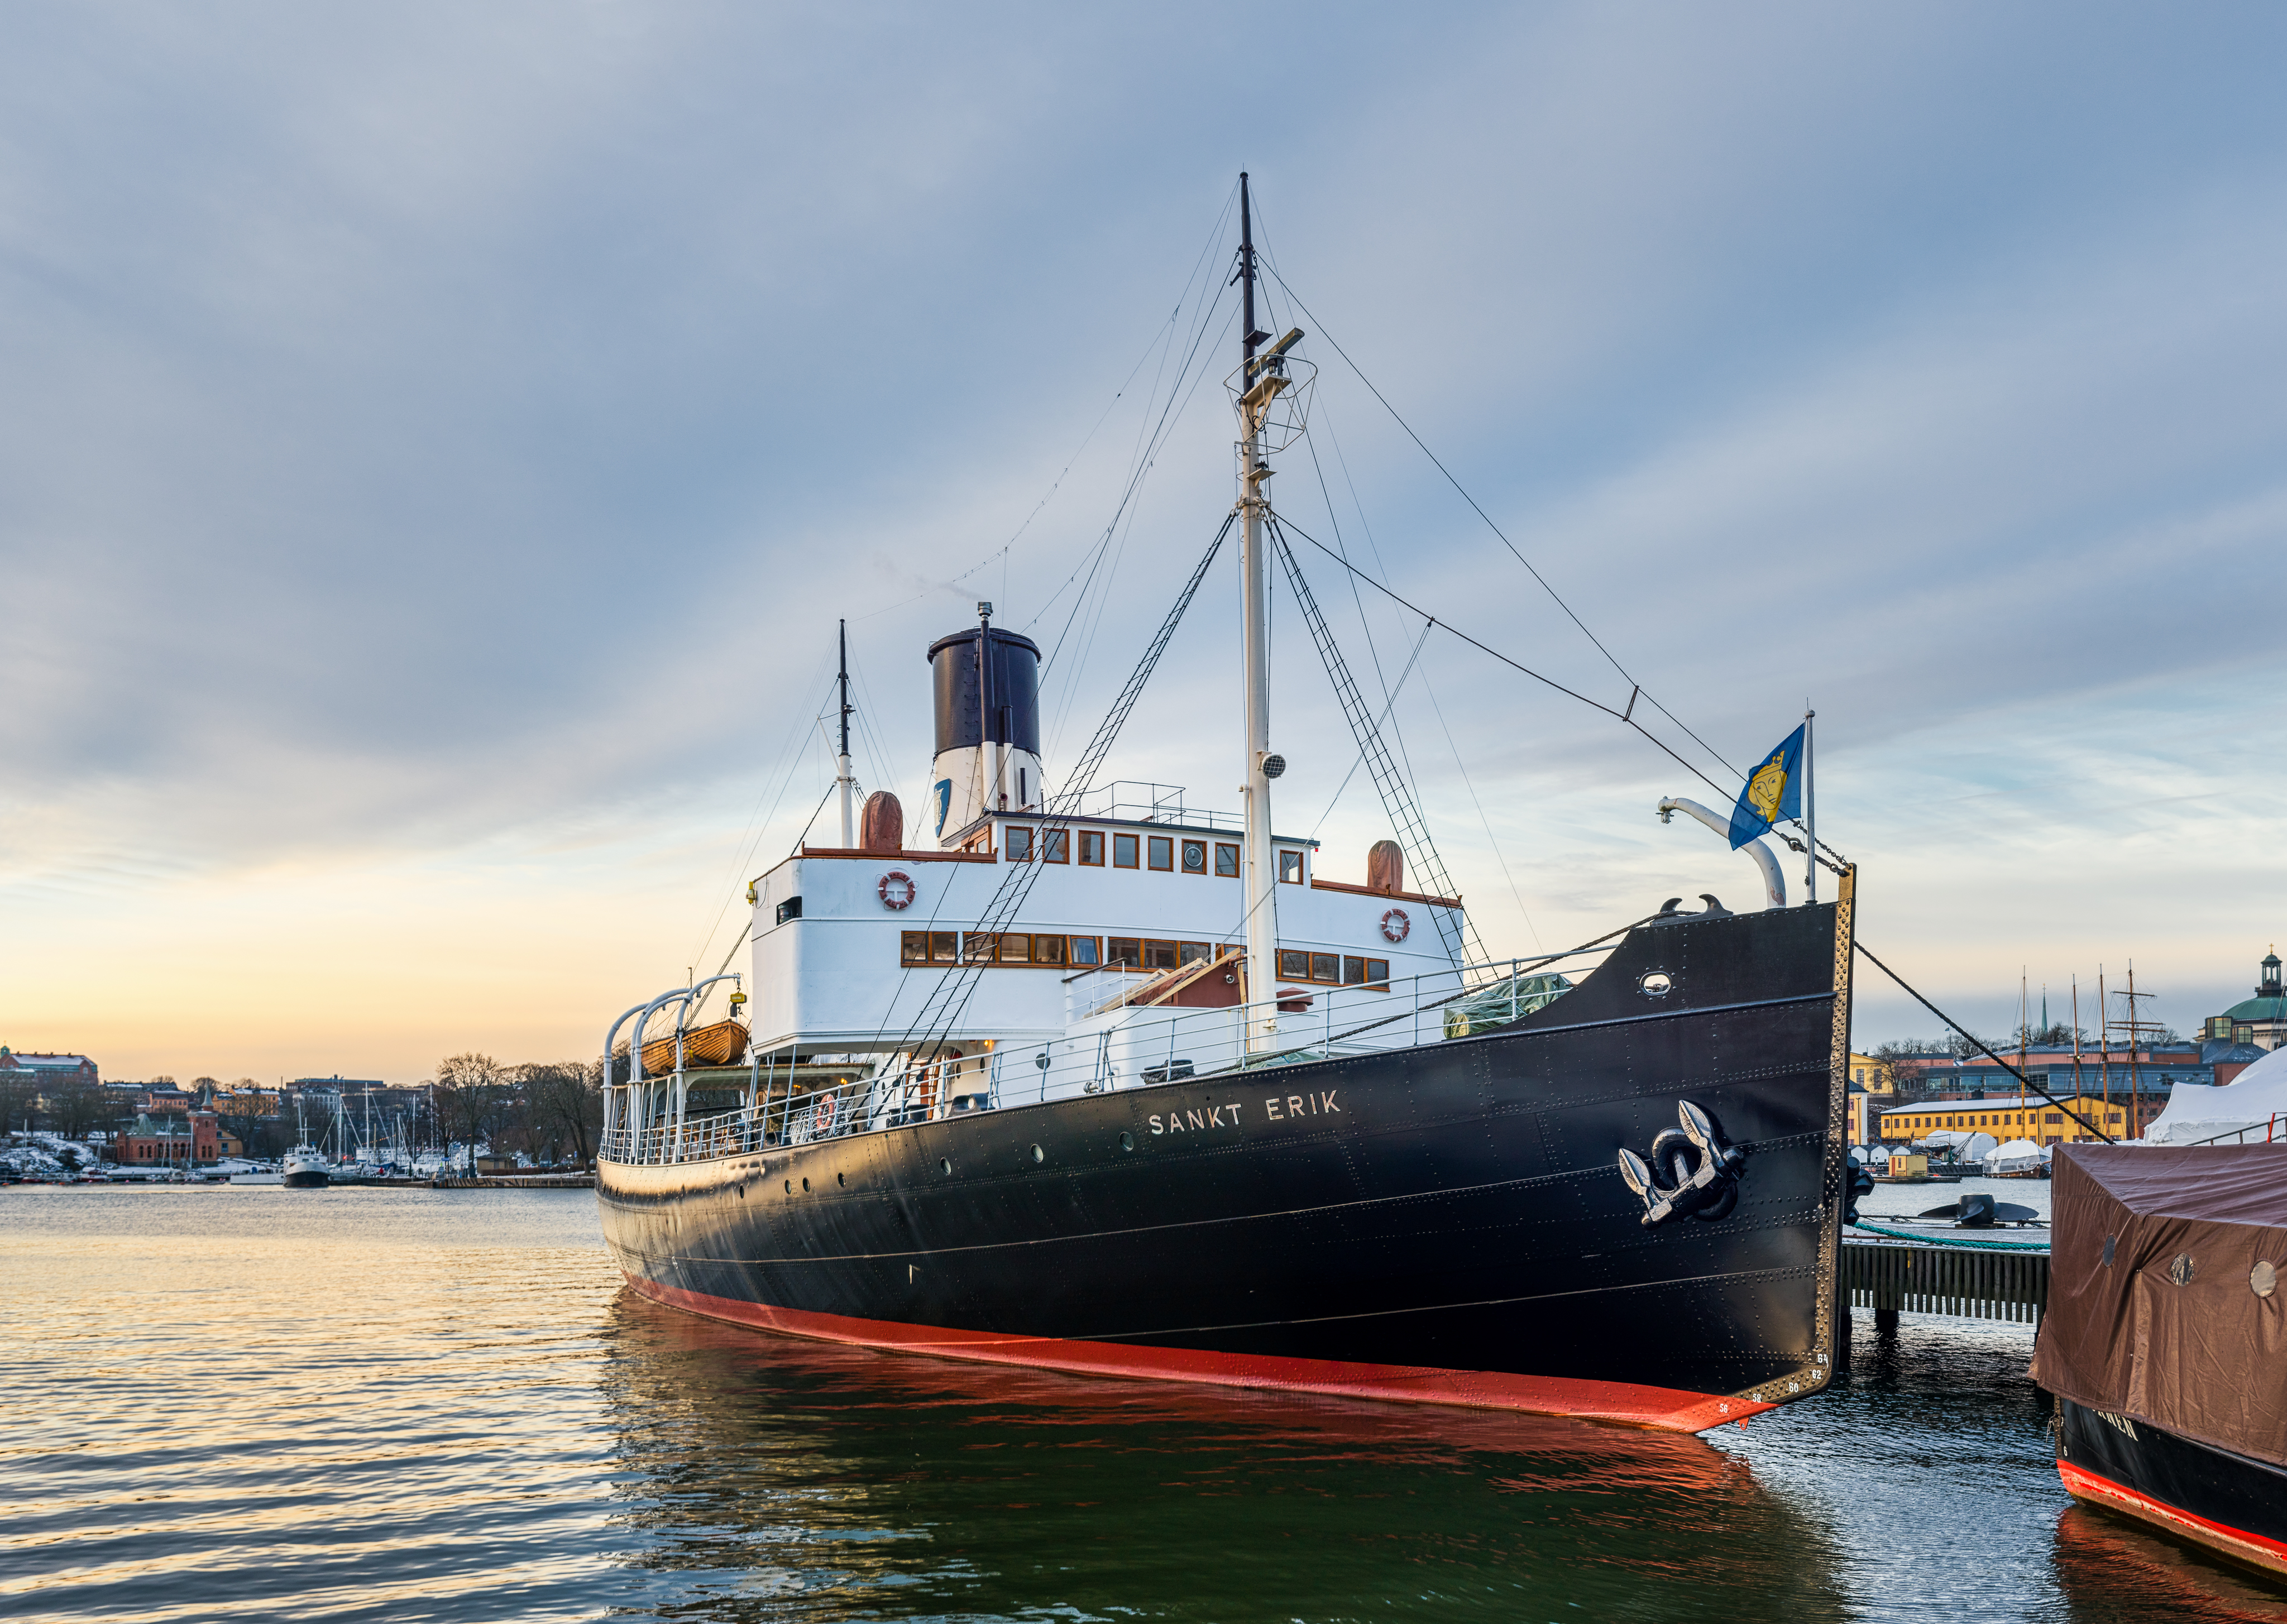 SS Sankt Erik icebreaker museum ship Stockholm 2016 01